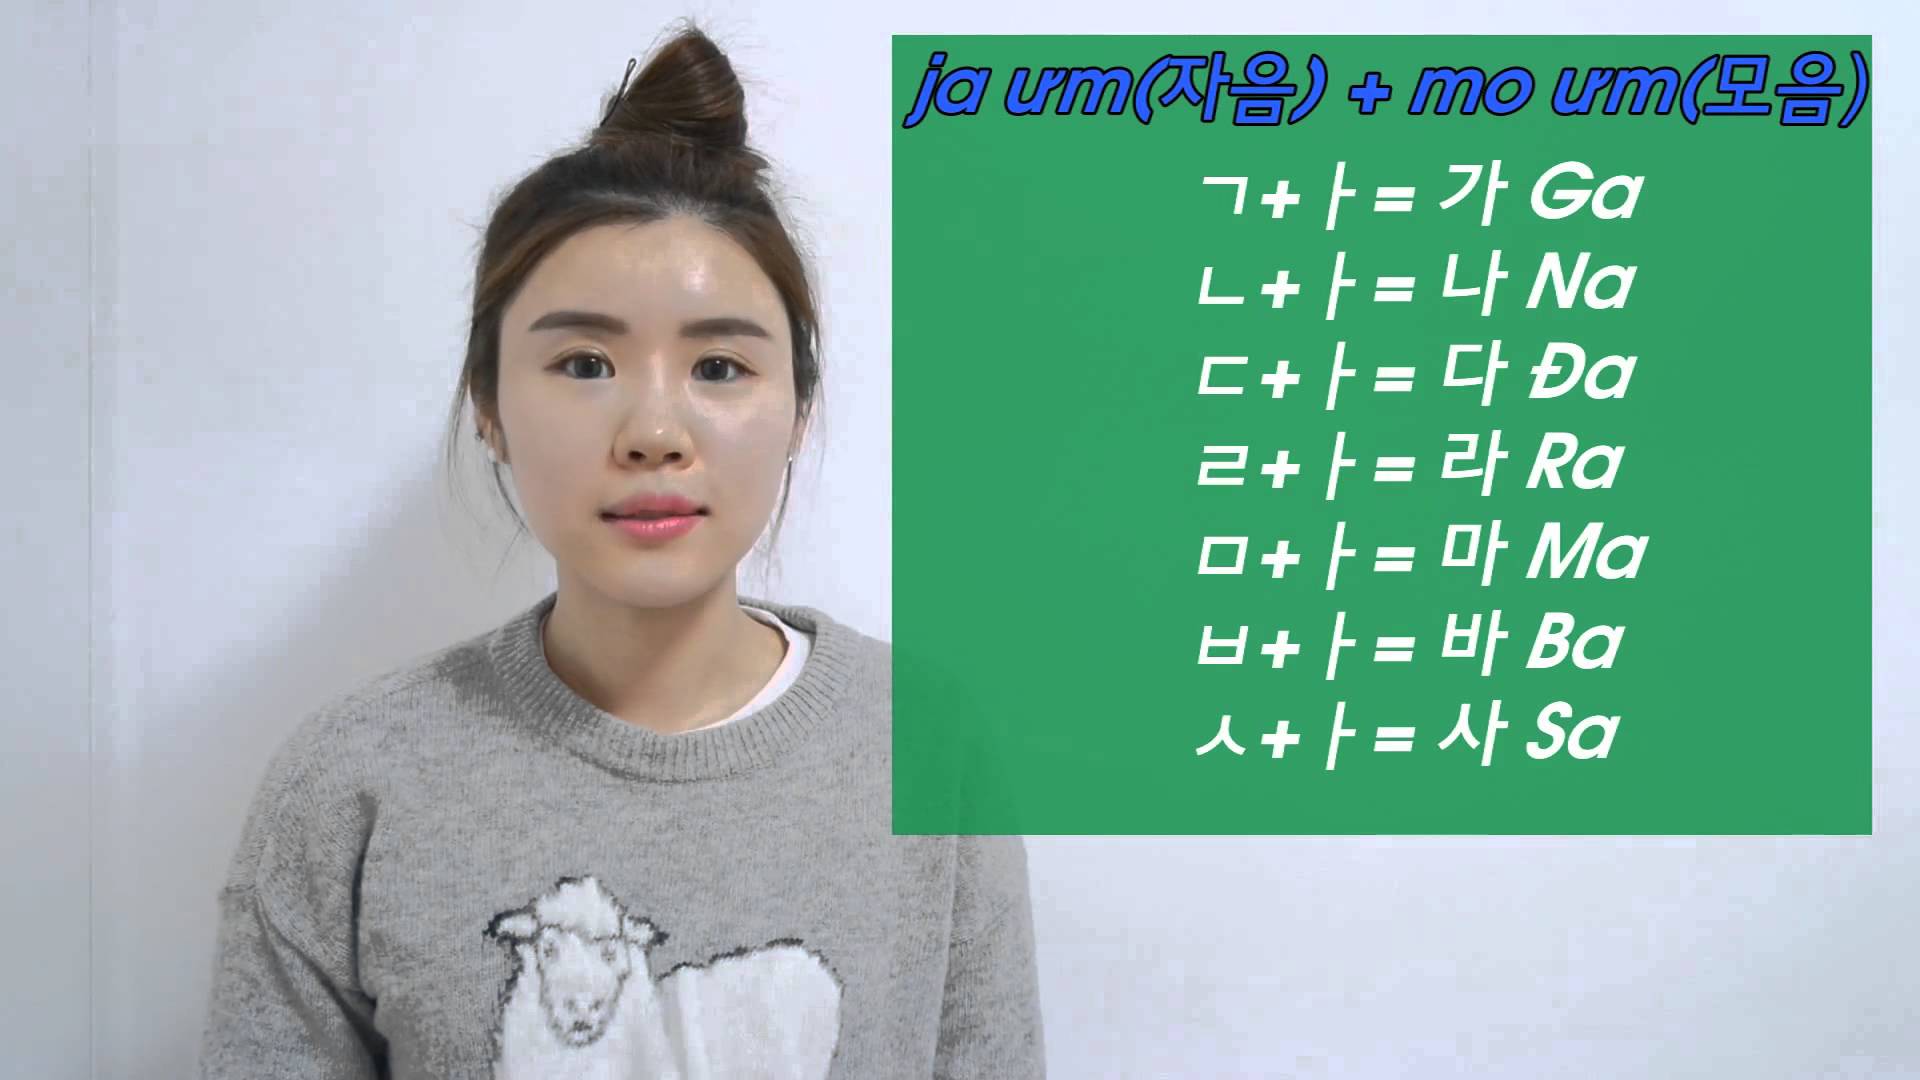 Hướng dẫn học bảng chữ cái tiếng Hàn thật đơn giản